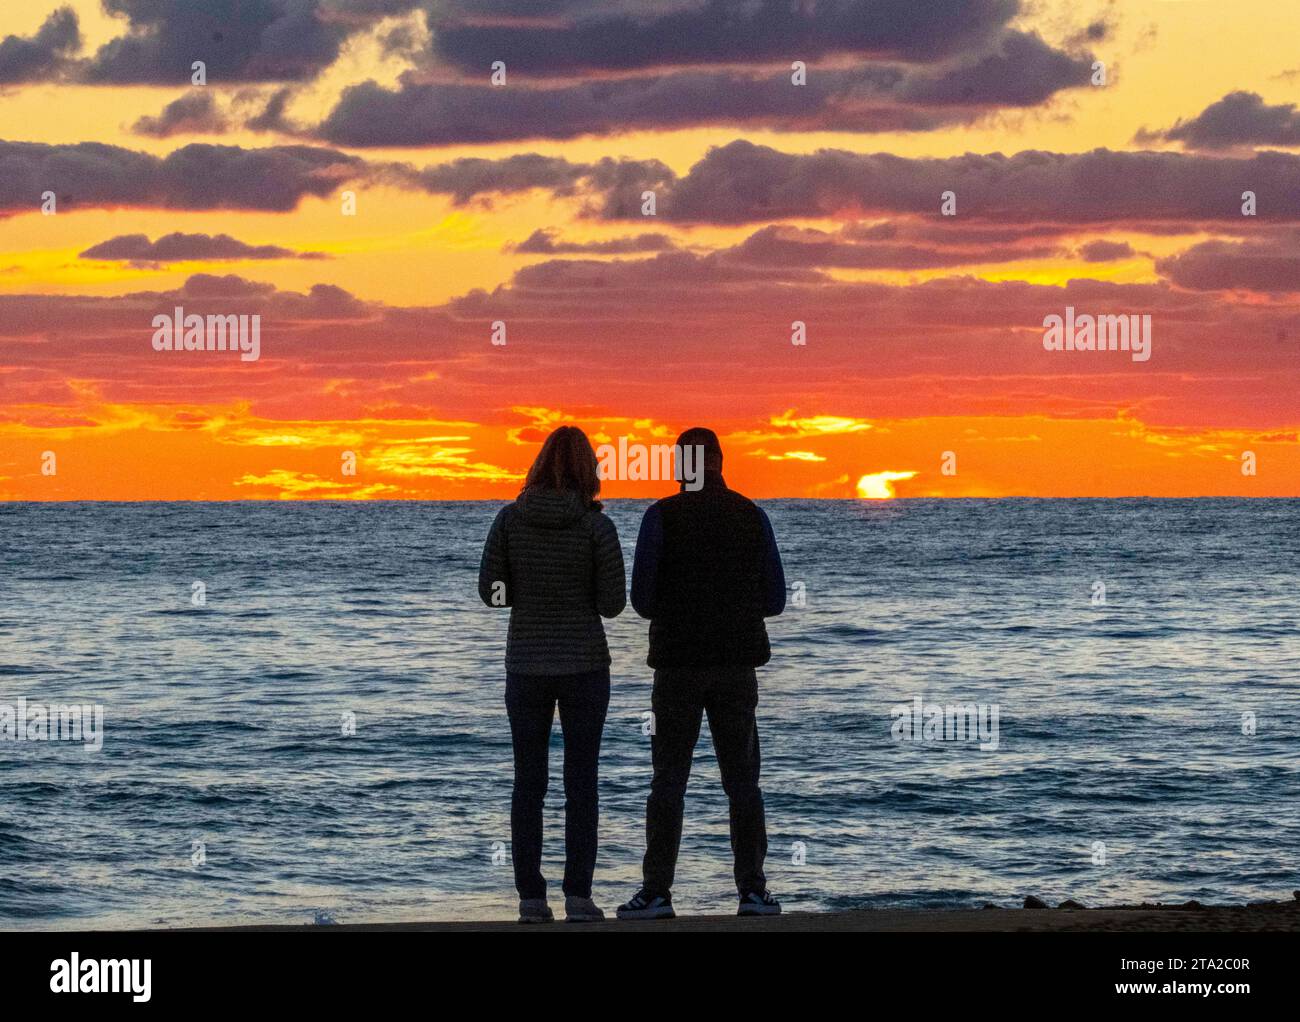 Un jeune couple regarde le coucher de soleil sur la mer Méditerranée, Paphos, Chypre Banque D'Images